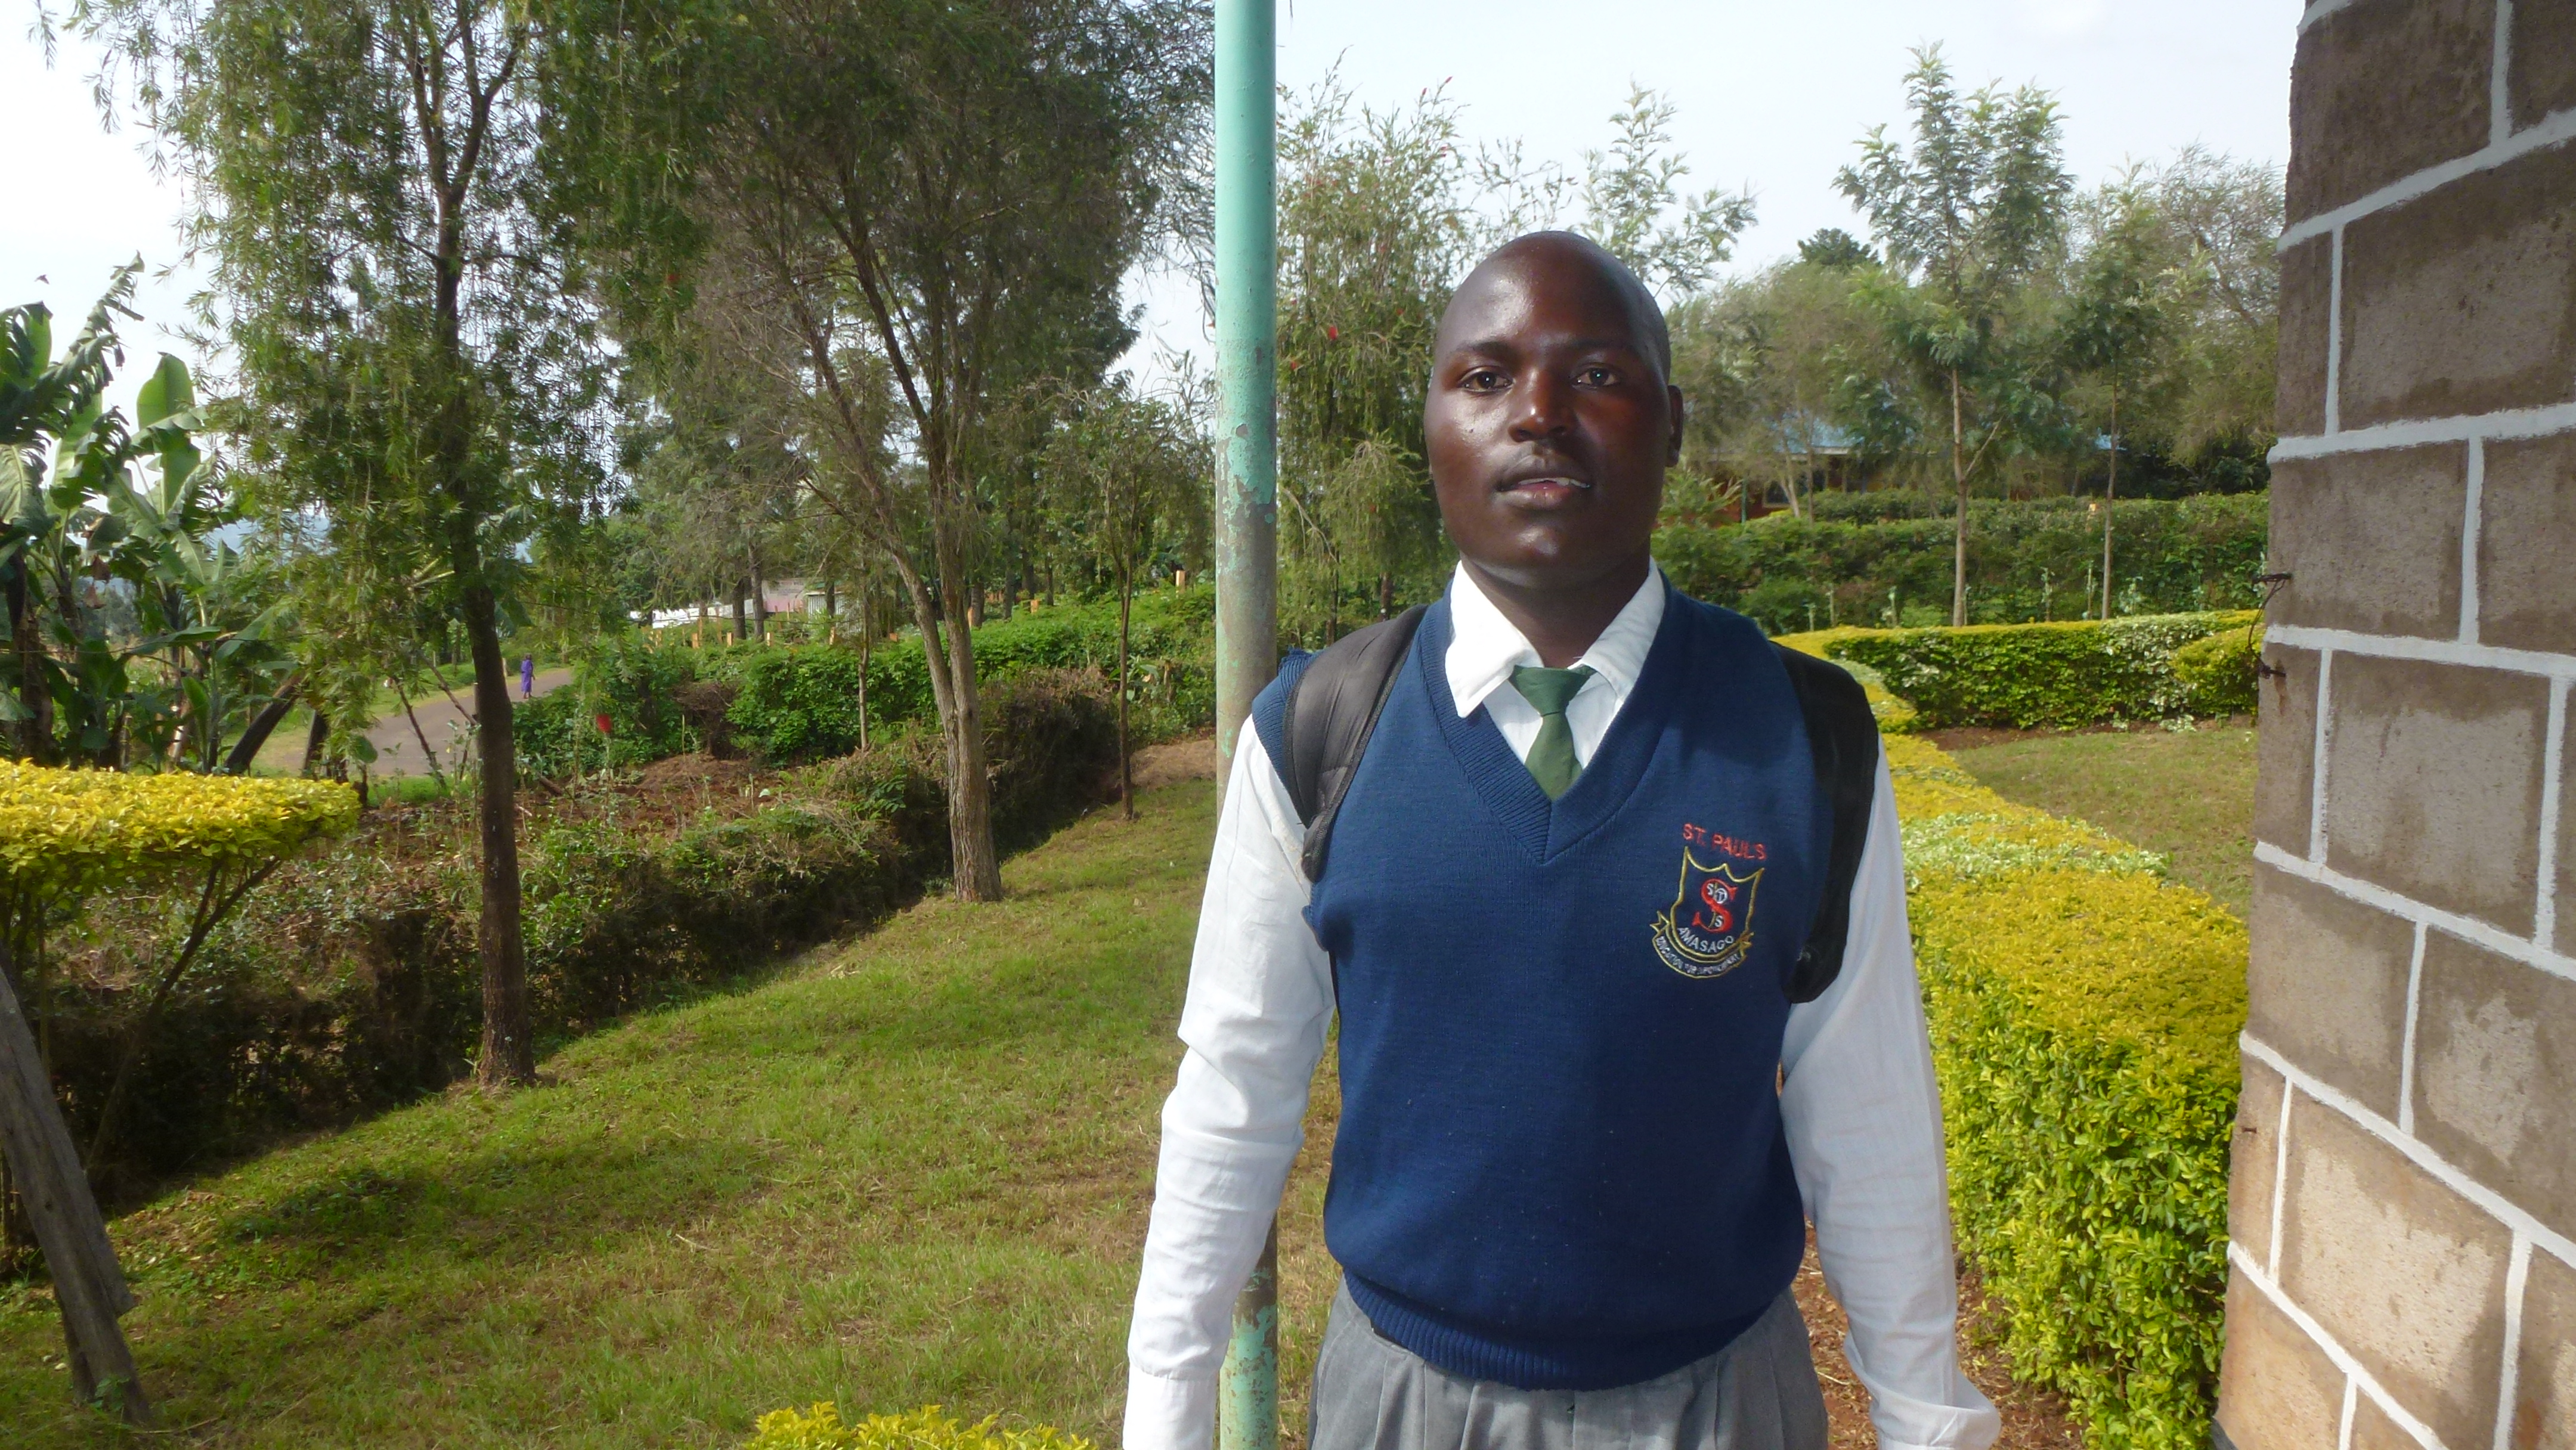 Faraji in his school uniform